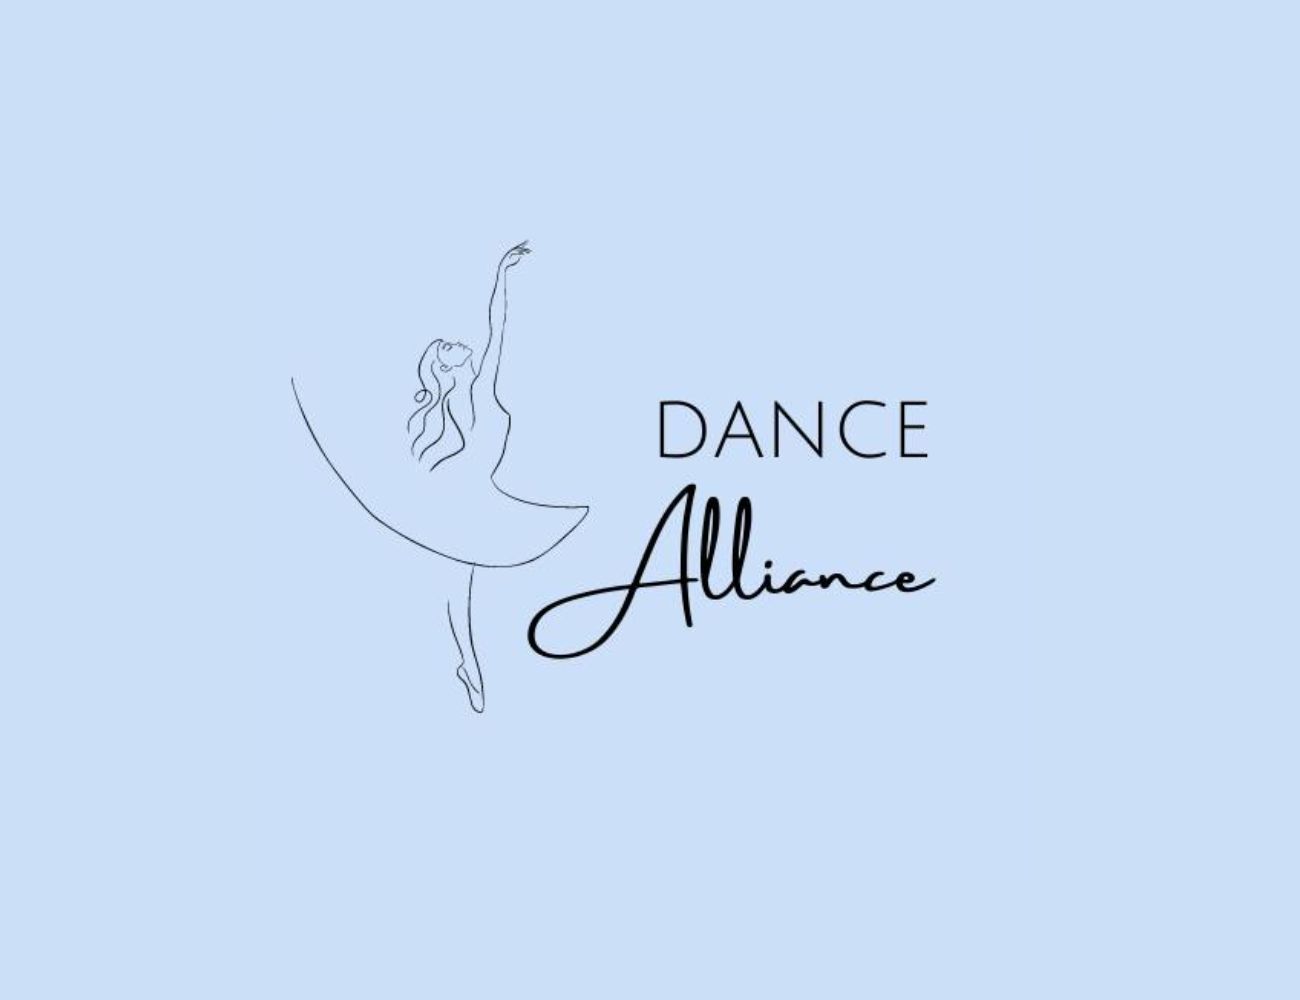 Dance Alliance